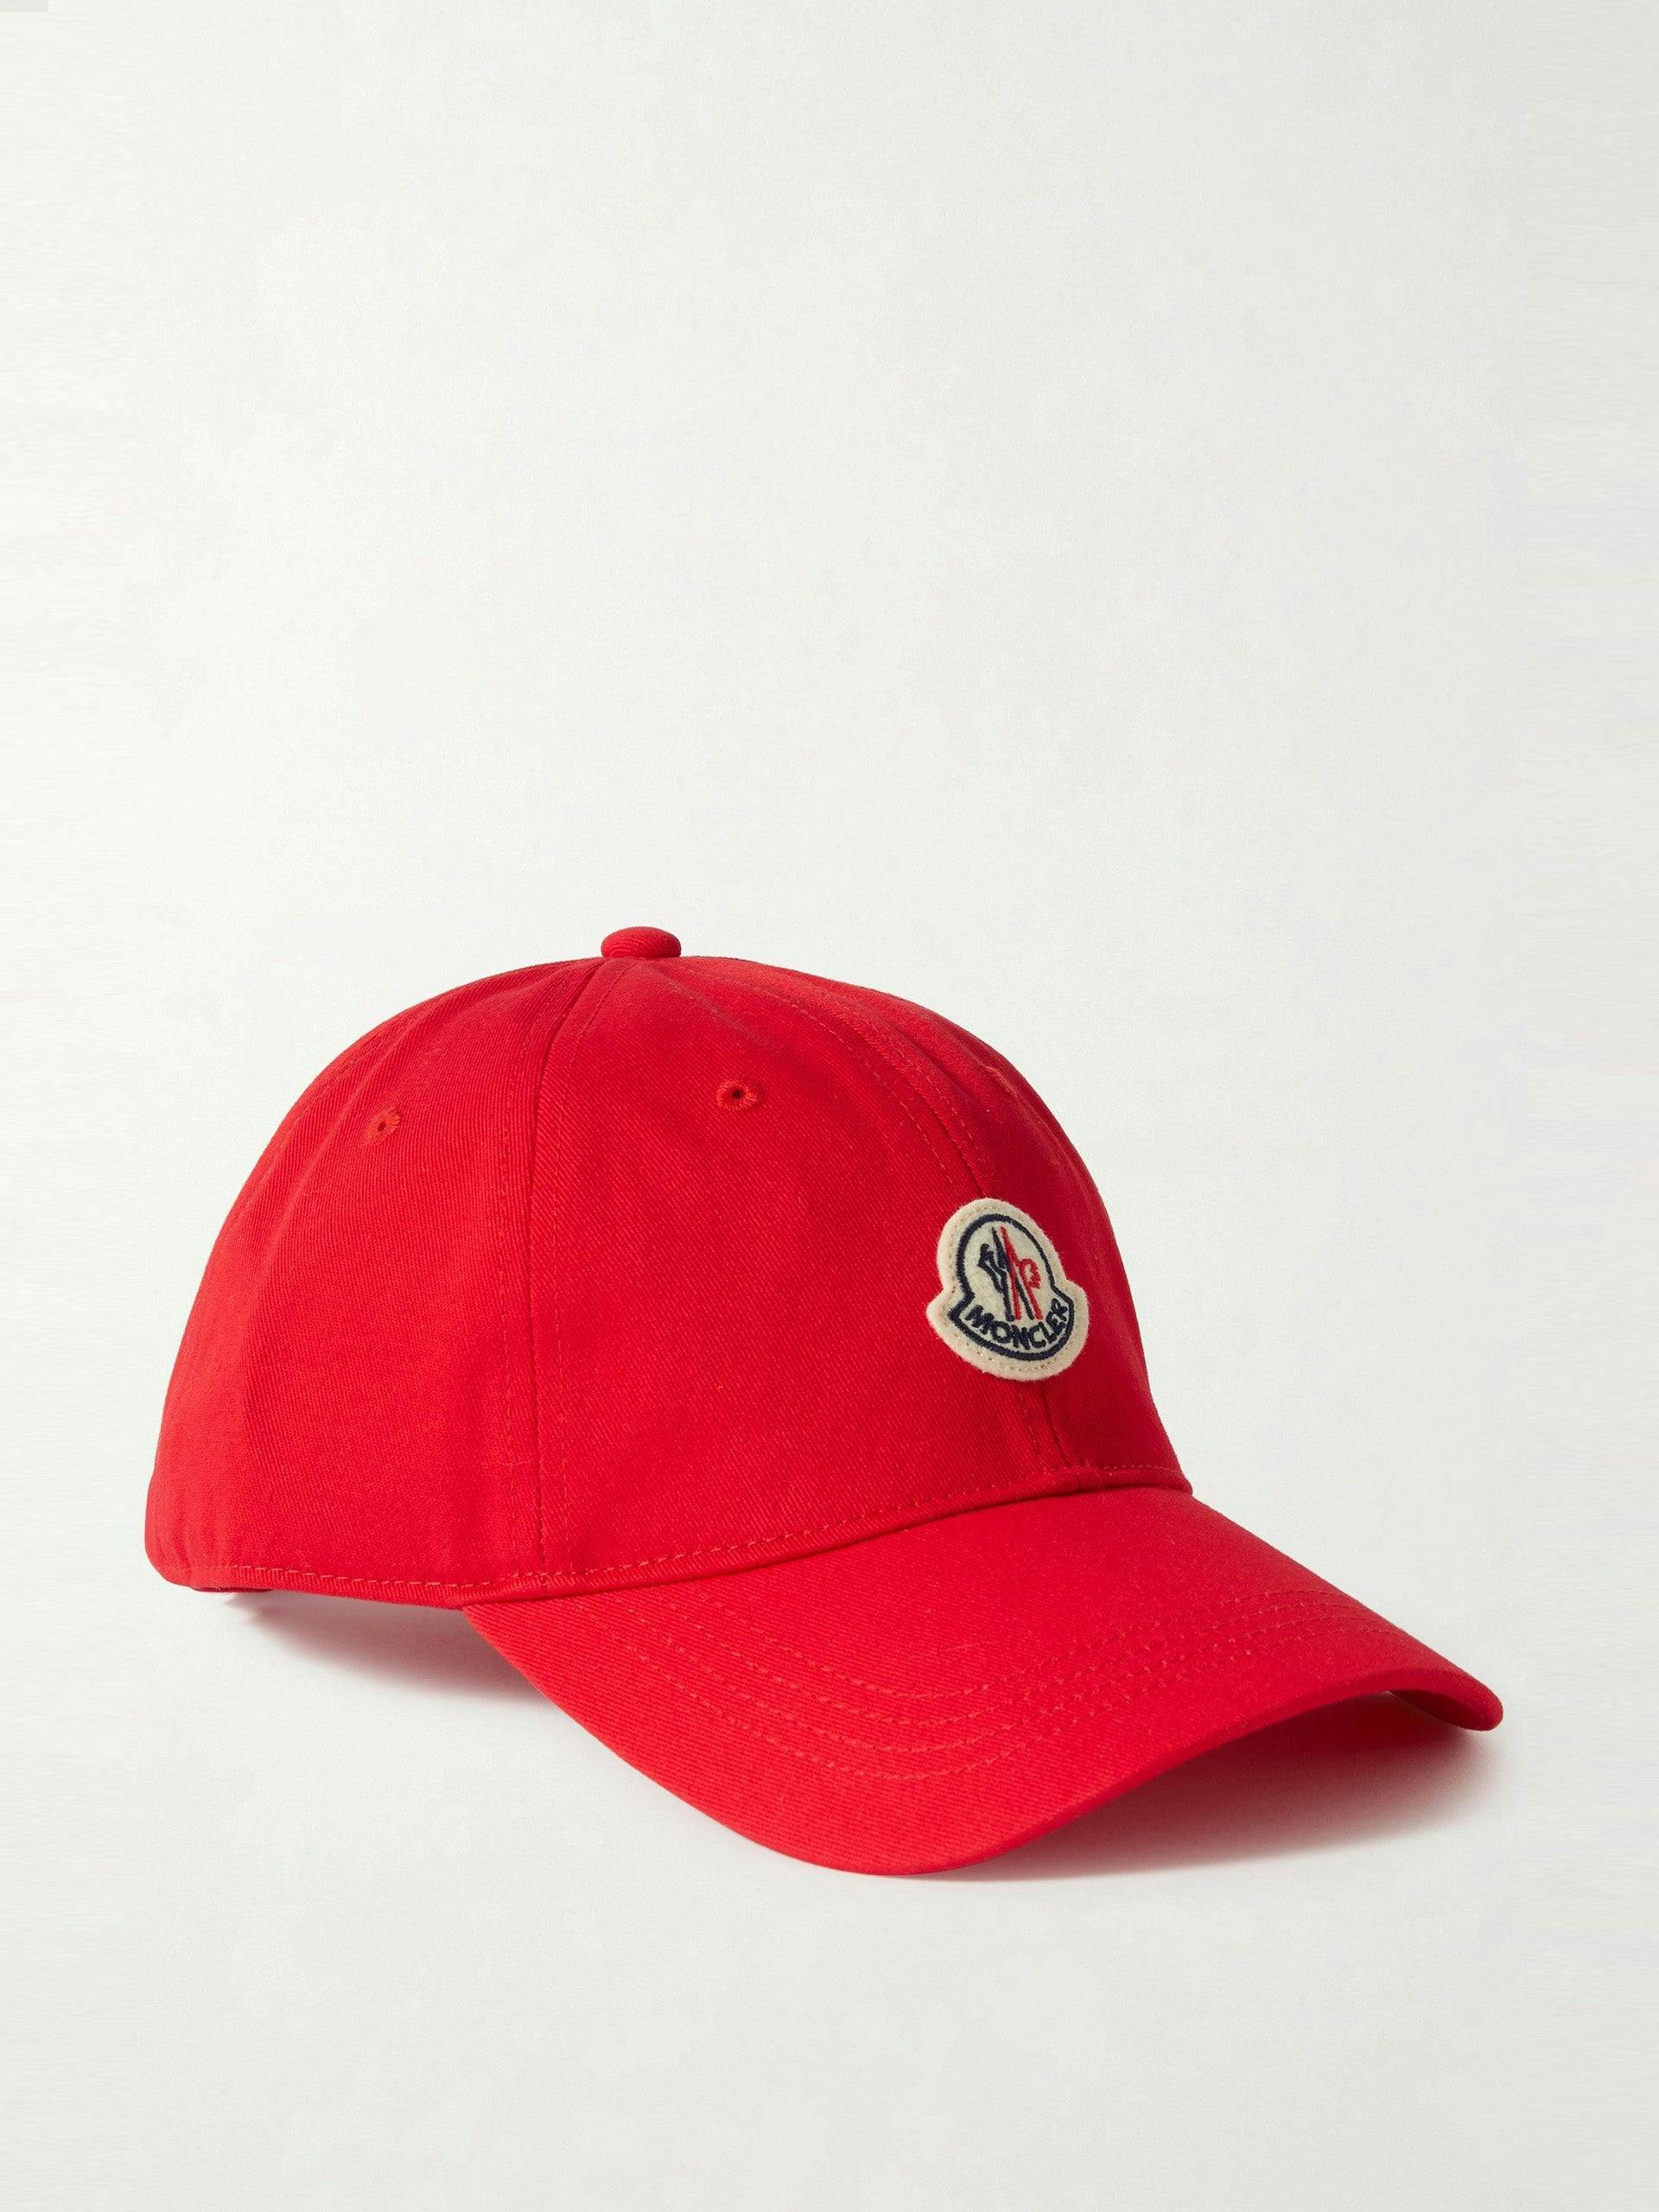 Red logo cap